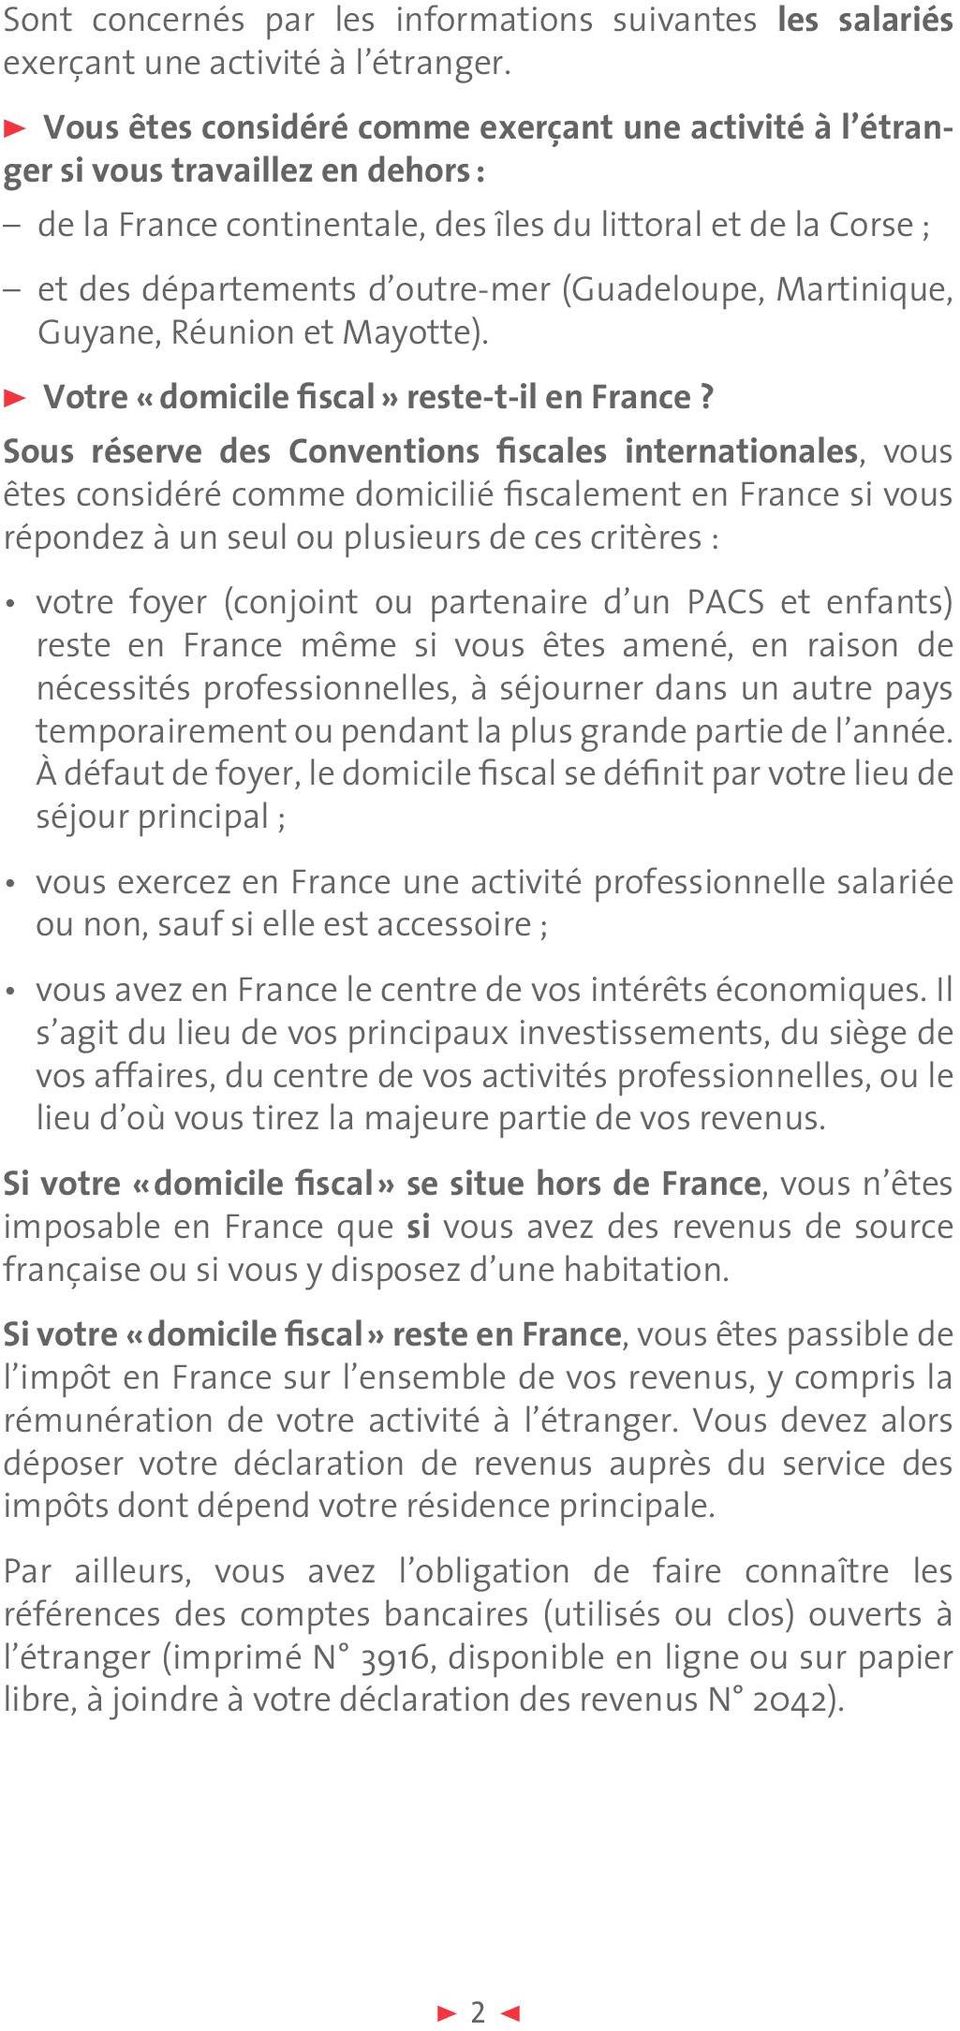 (Guadeloupe, Martinique, Guyane, Réunion et Mayotte). > Votre «domicile fiscal» reste-t-il en France?